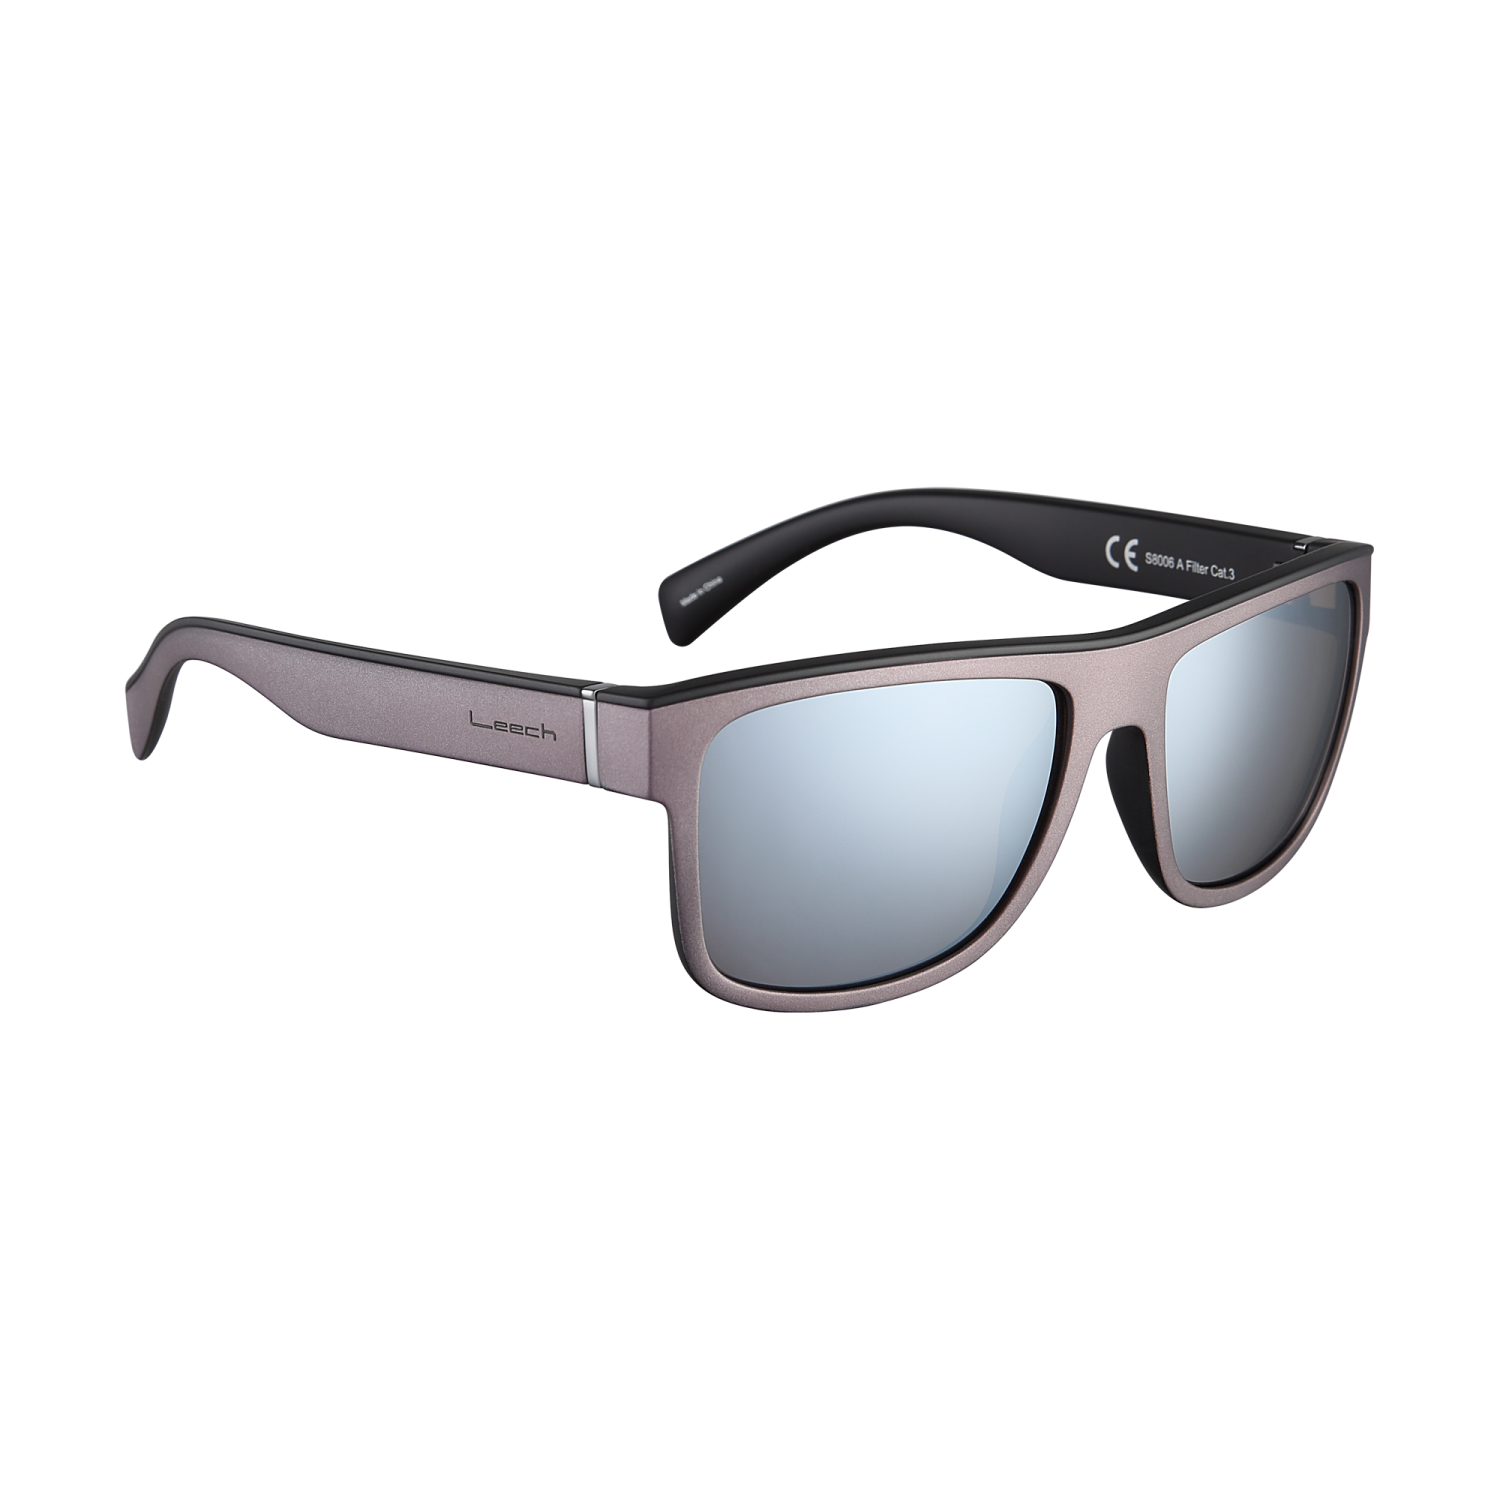 Очки солнцезащитные поляризационные Leech Eyewear Street Titanium - 2 рис.